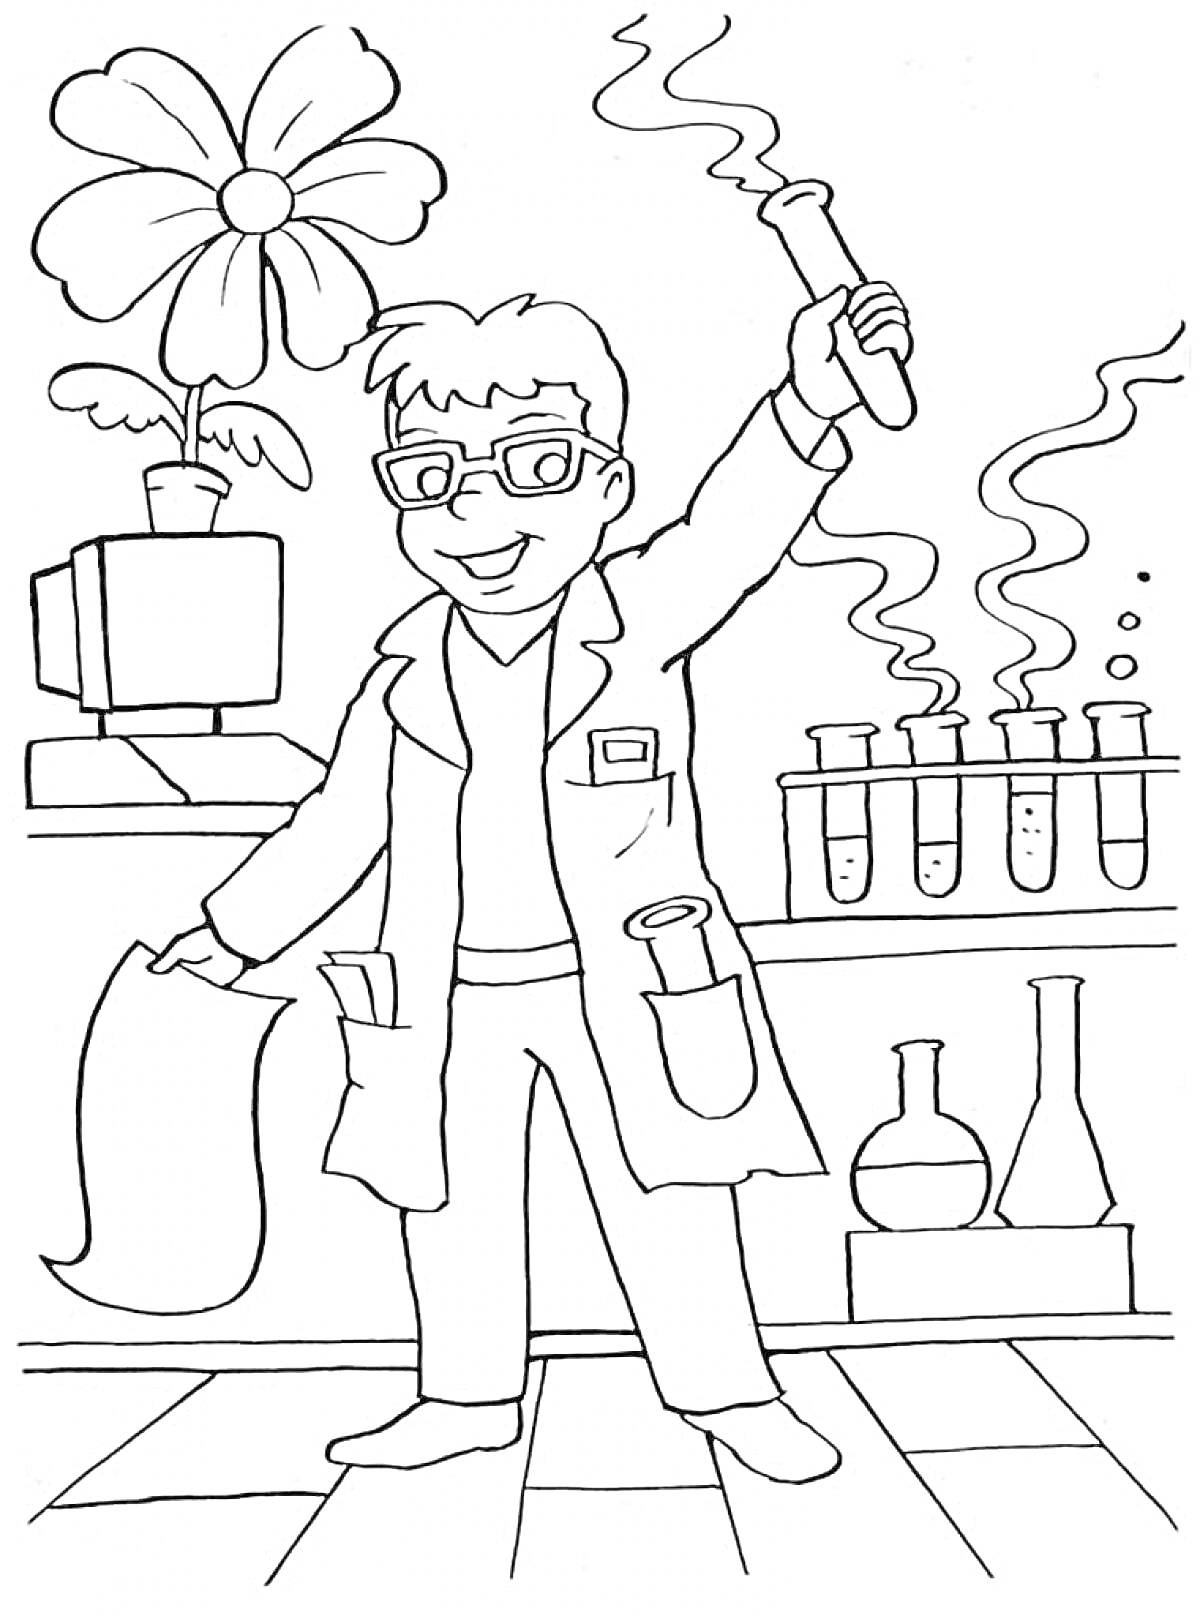 Раскраска Ученый в лаборатории с пробирками, колбами, цветком на компьютере и листом бумаги